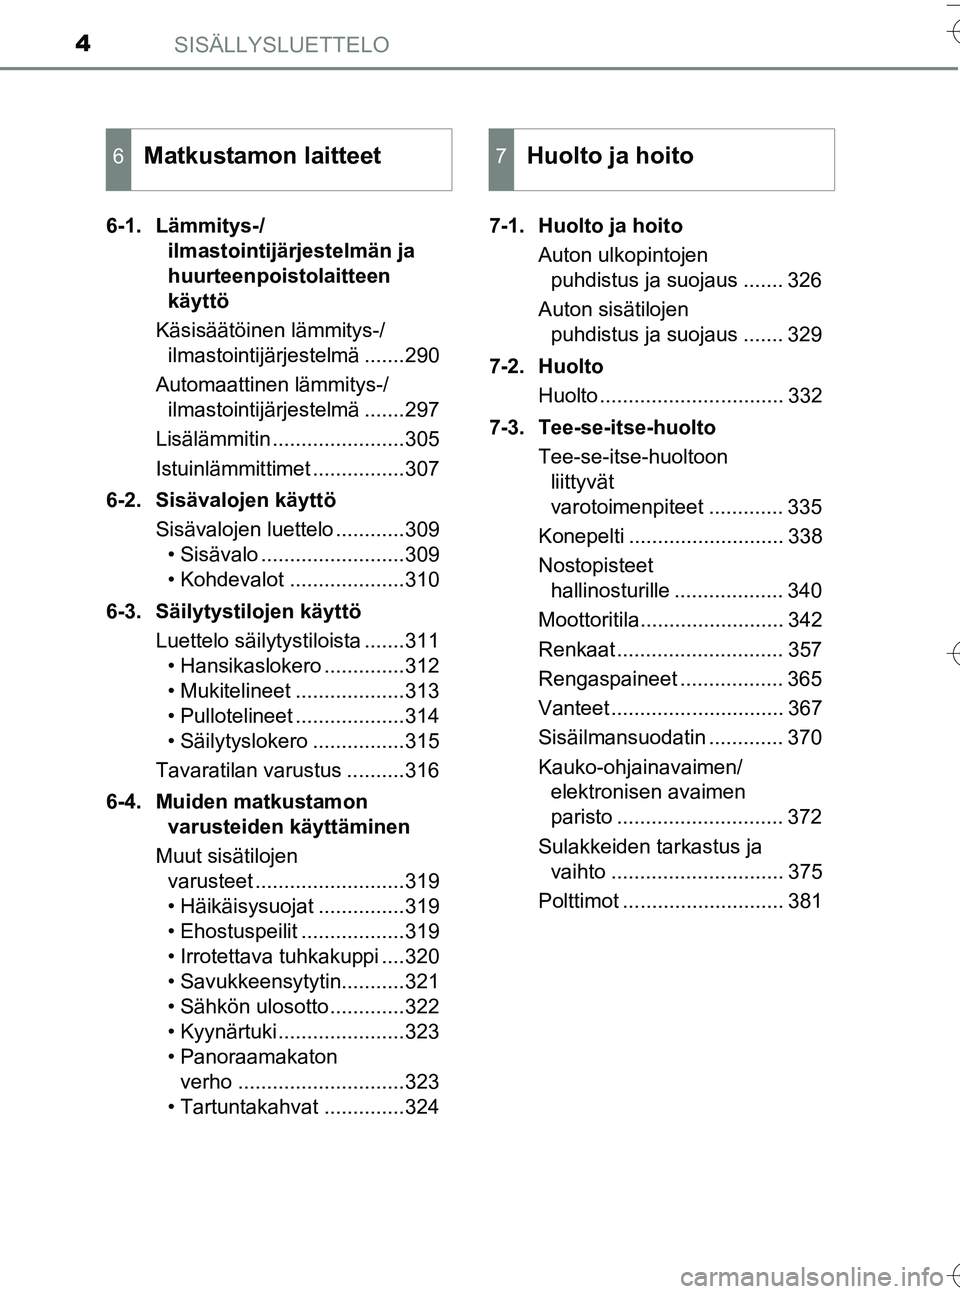 TOYOTA YARIS HATCHBACK 2016  Omistajan Käsikirja (in Finnish) SISÄLLYSLUETTELO4
OM52G66FI6-1. Lämmitys-/
ilmastointijärjestelmän ja 
huurteenpoistolaitteen 
käyttö
Käsisäätöinen lämmitys-/ ilmastointijärjestelmä .......290
Automaattinen lämmitys-/ 